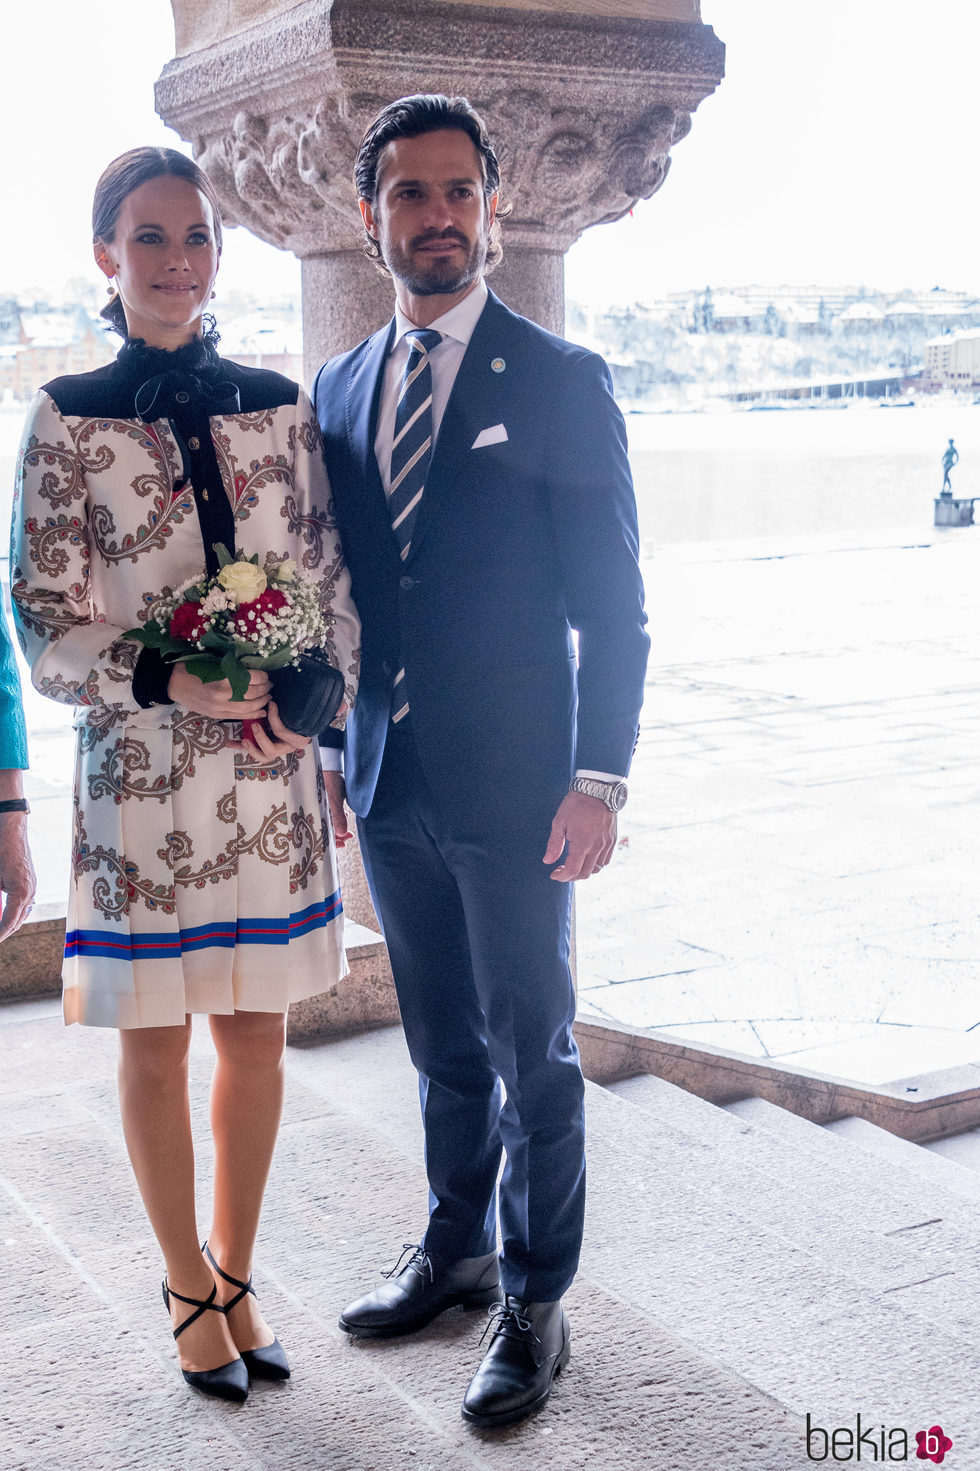 Carlos Felipe de Suecia y Sofia Hellqvist en el Ayuntamiento de Estocolmo por la visita del Gobernador de Canadá